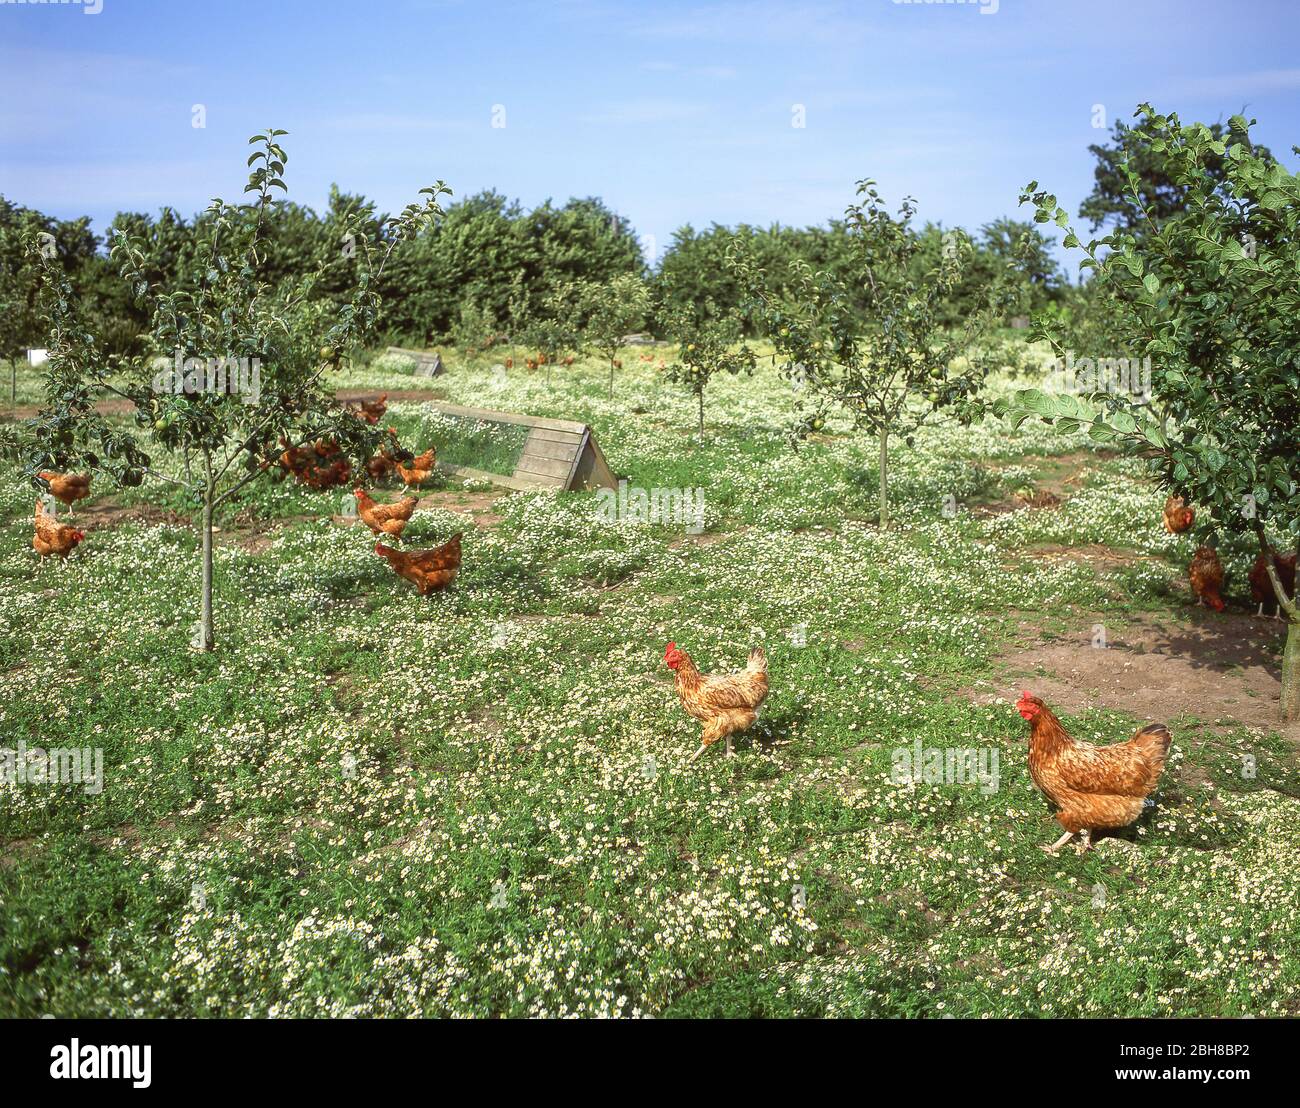 Pollos de granja en la granja avícola, Hampshire, Inglaterra, Reino Unido Foto de stock